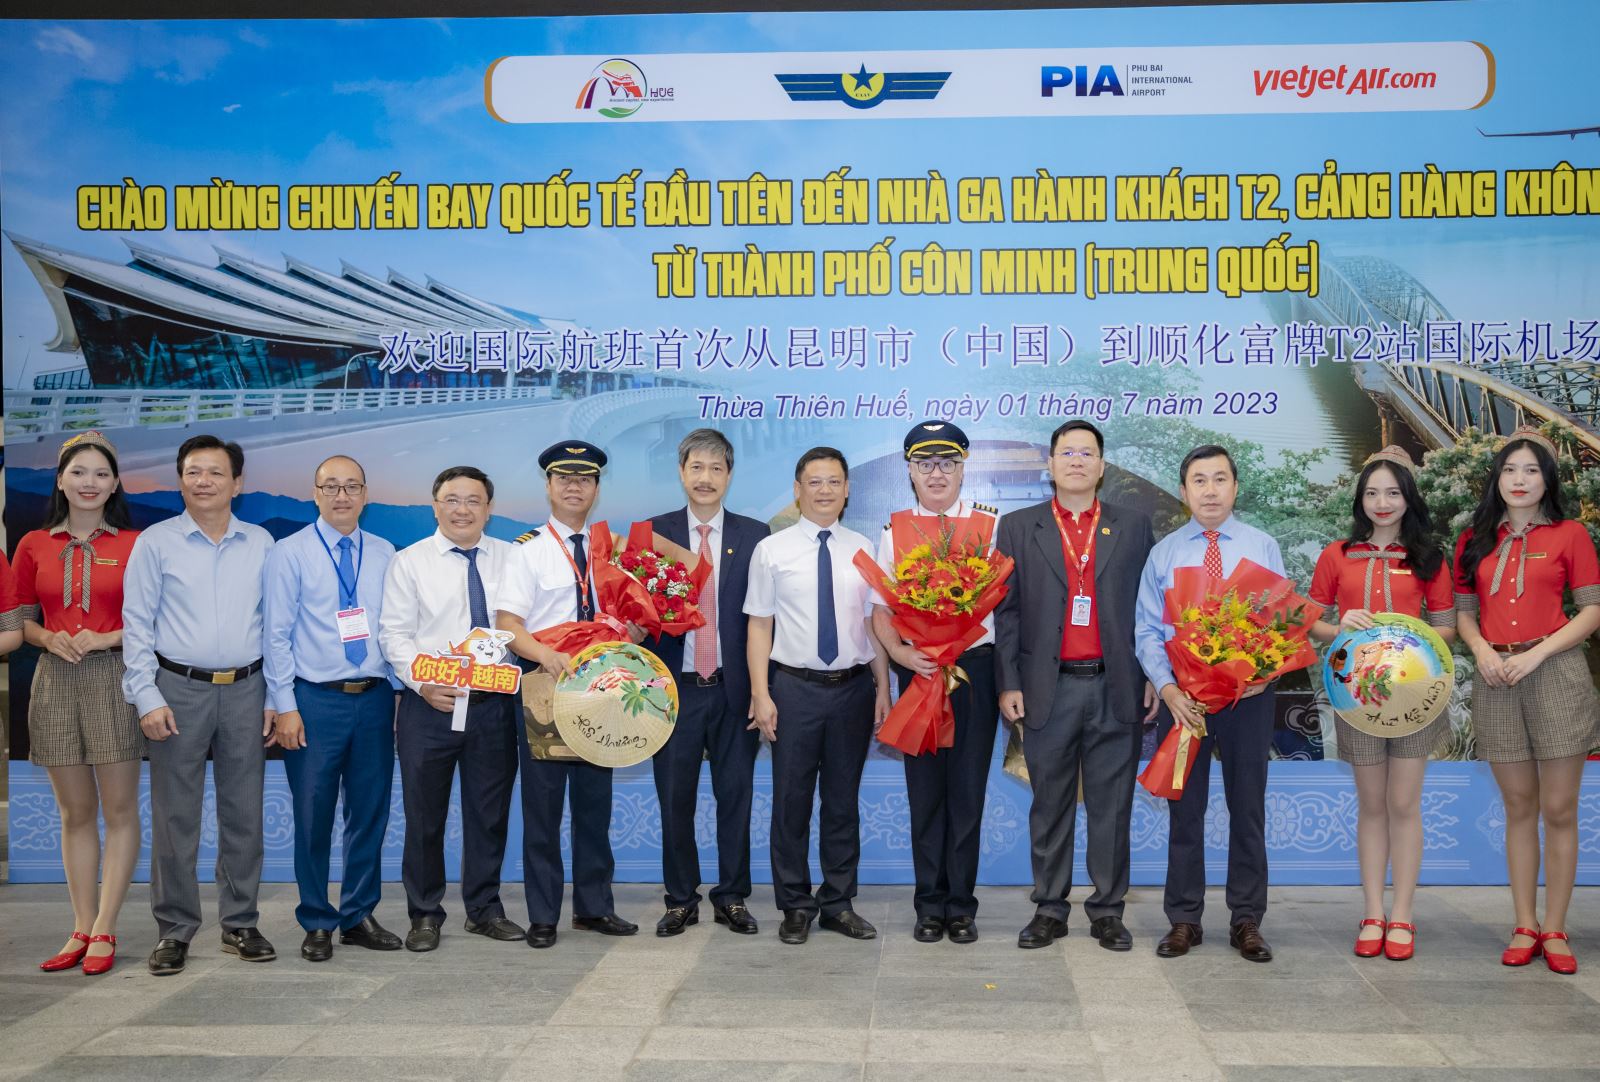 Tỉnh Thừa Thiên- Huế phối hợp cùng Công ty Cổ phần Hàng không Vietjet đón chuyến bay quốc tế đầu tiên tại Nhà ga T2 - Cảng Hàng không quốc tế Phú Bài.